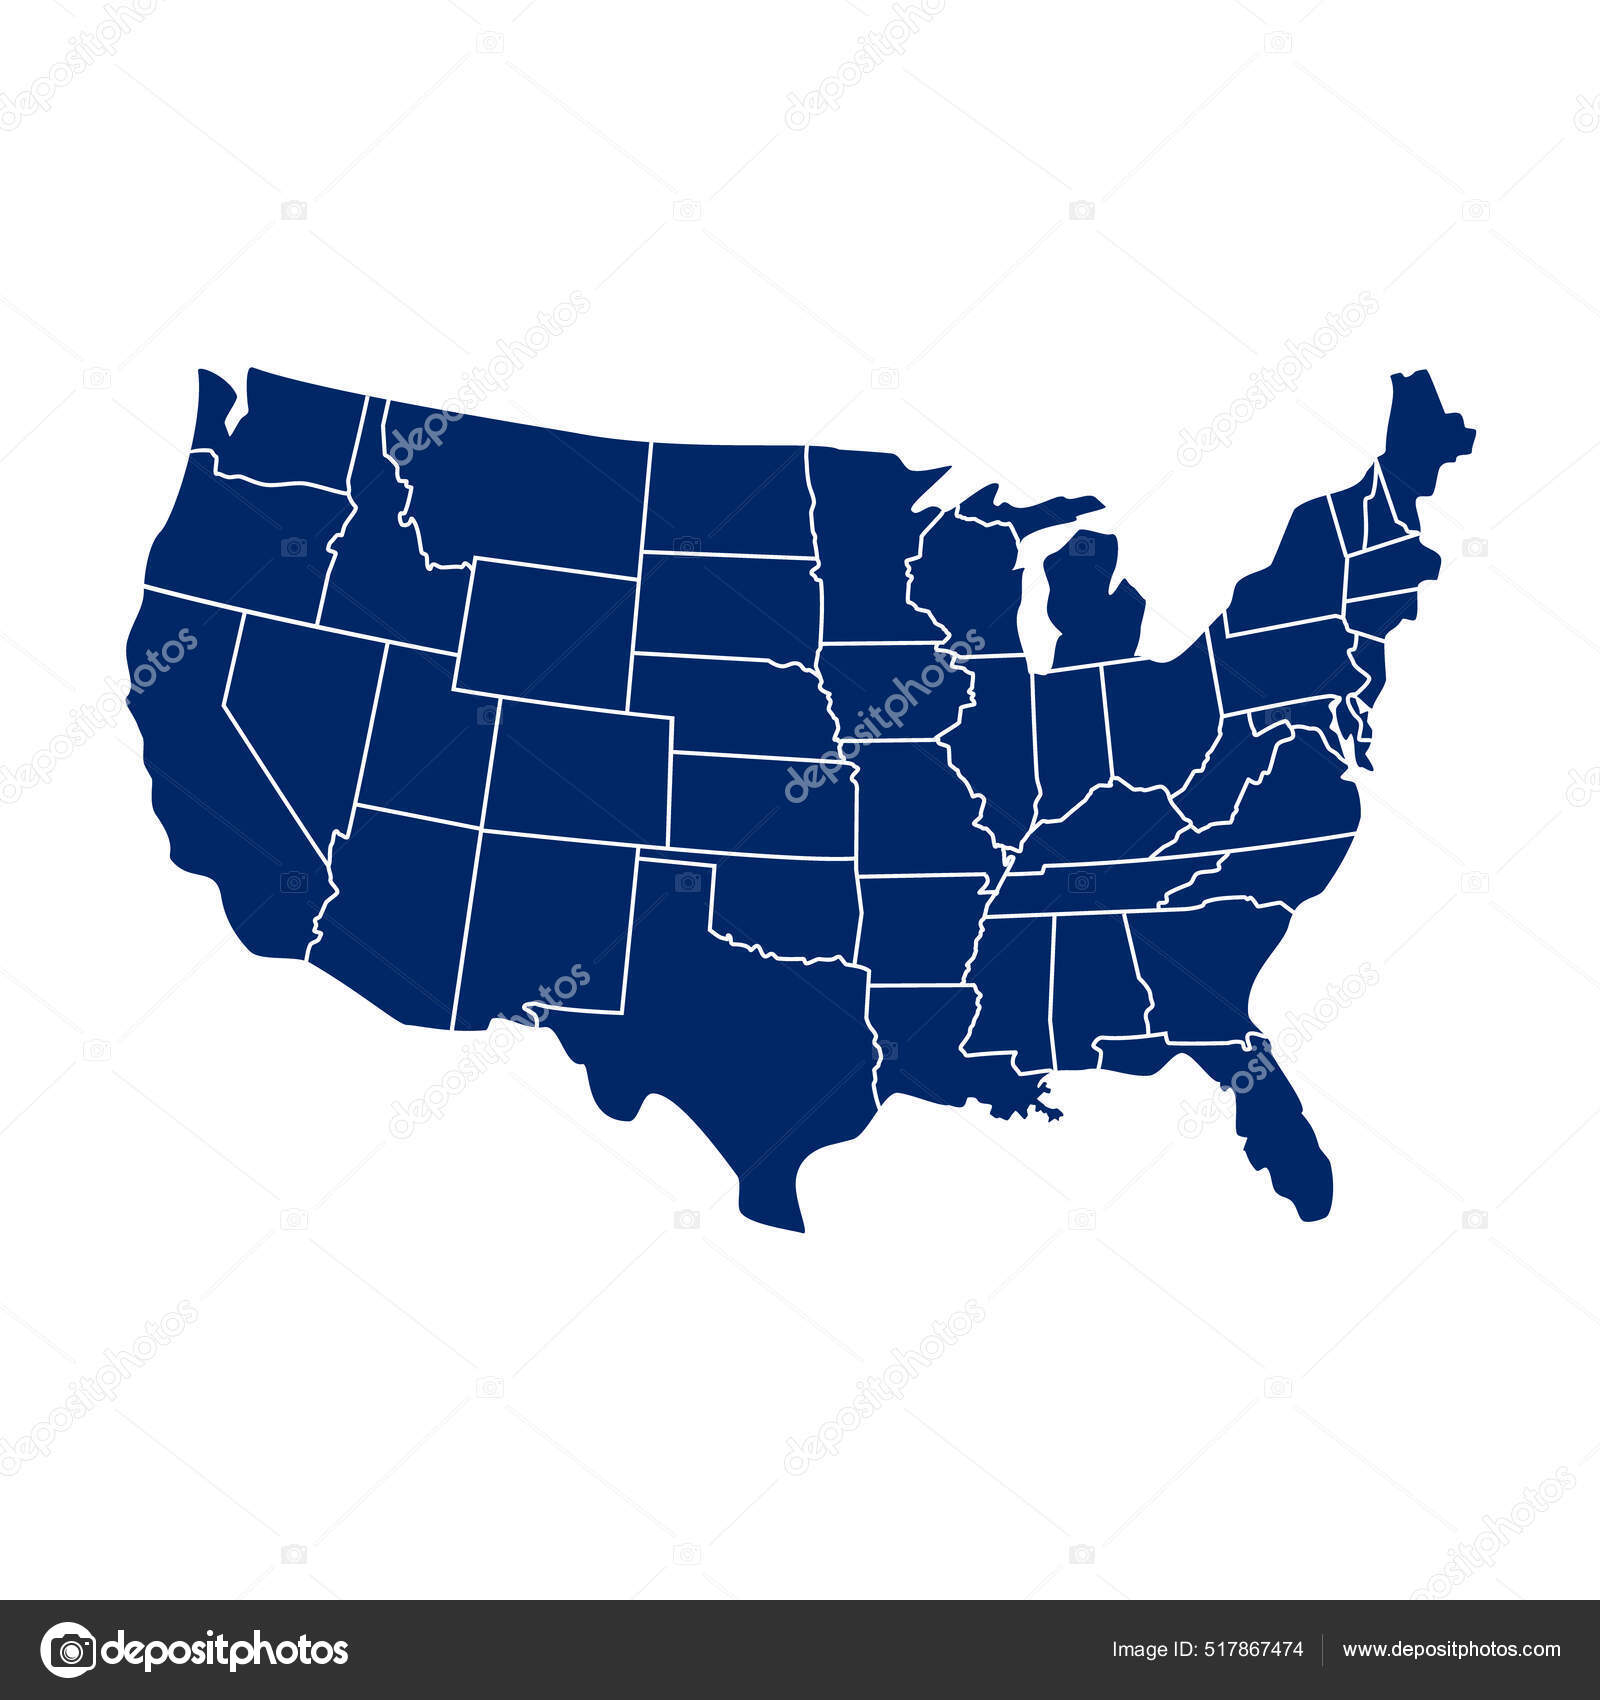 Mapa dos EUA. Estados e territórios dos Estados Unidos da América